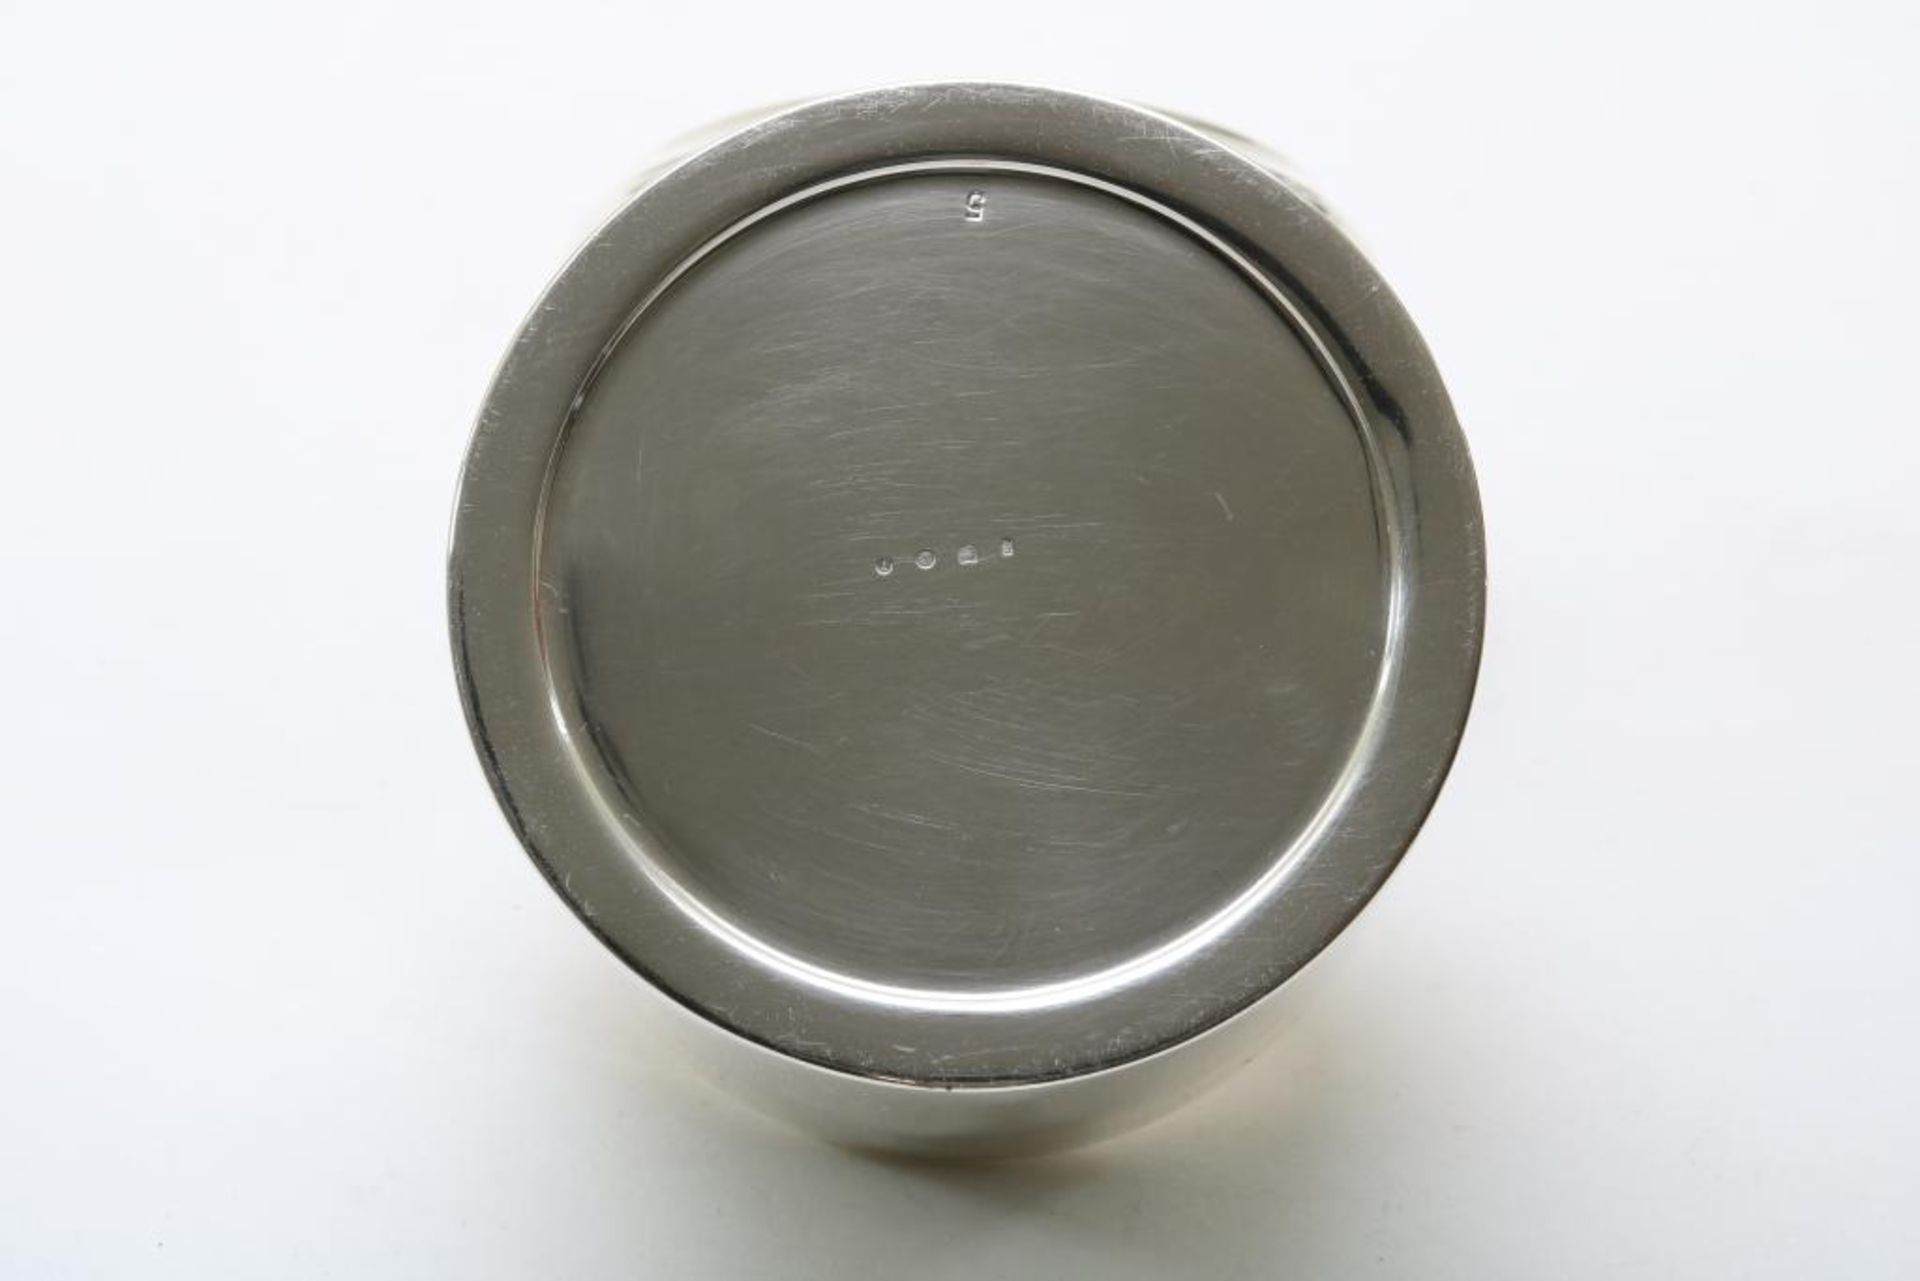 Zilveren trommel, diam.9.5 cm. - Bild 3 aus 4